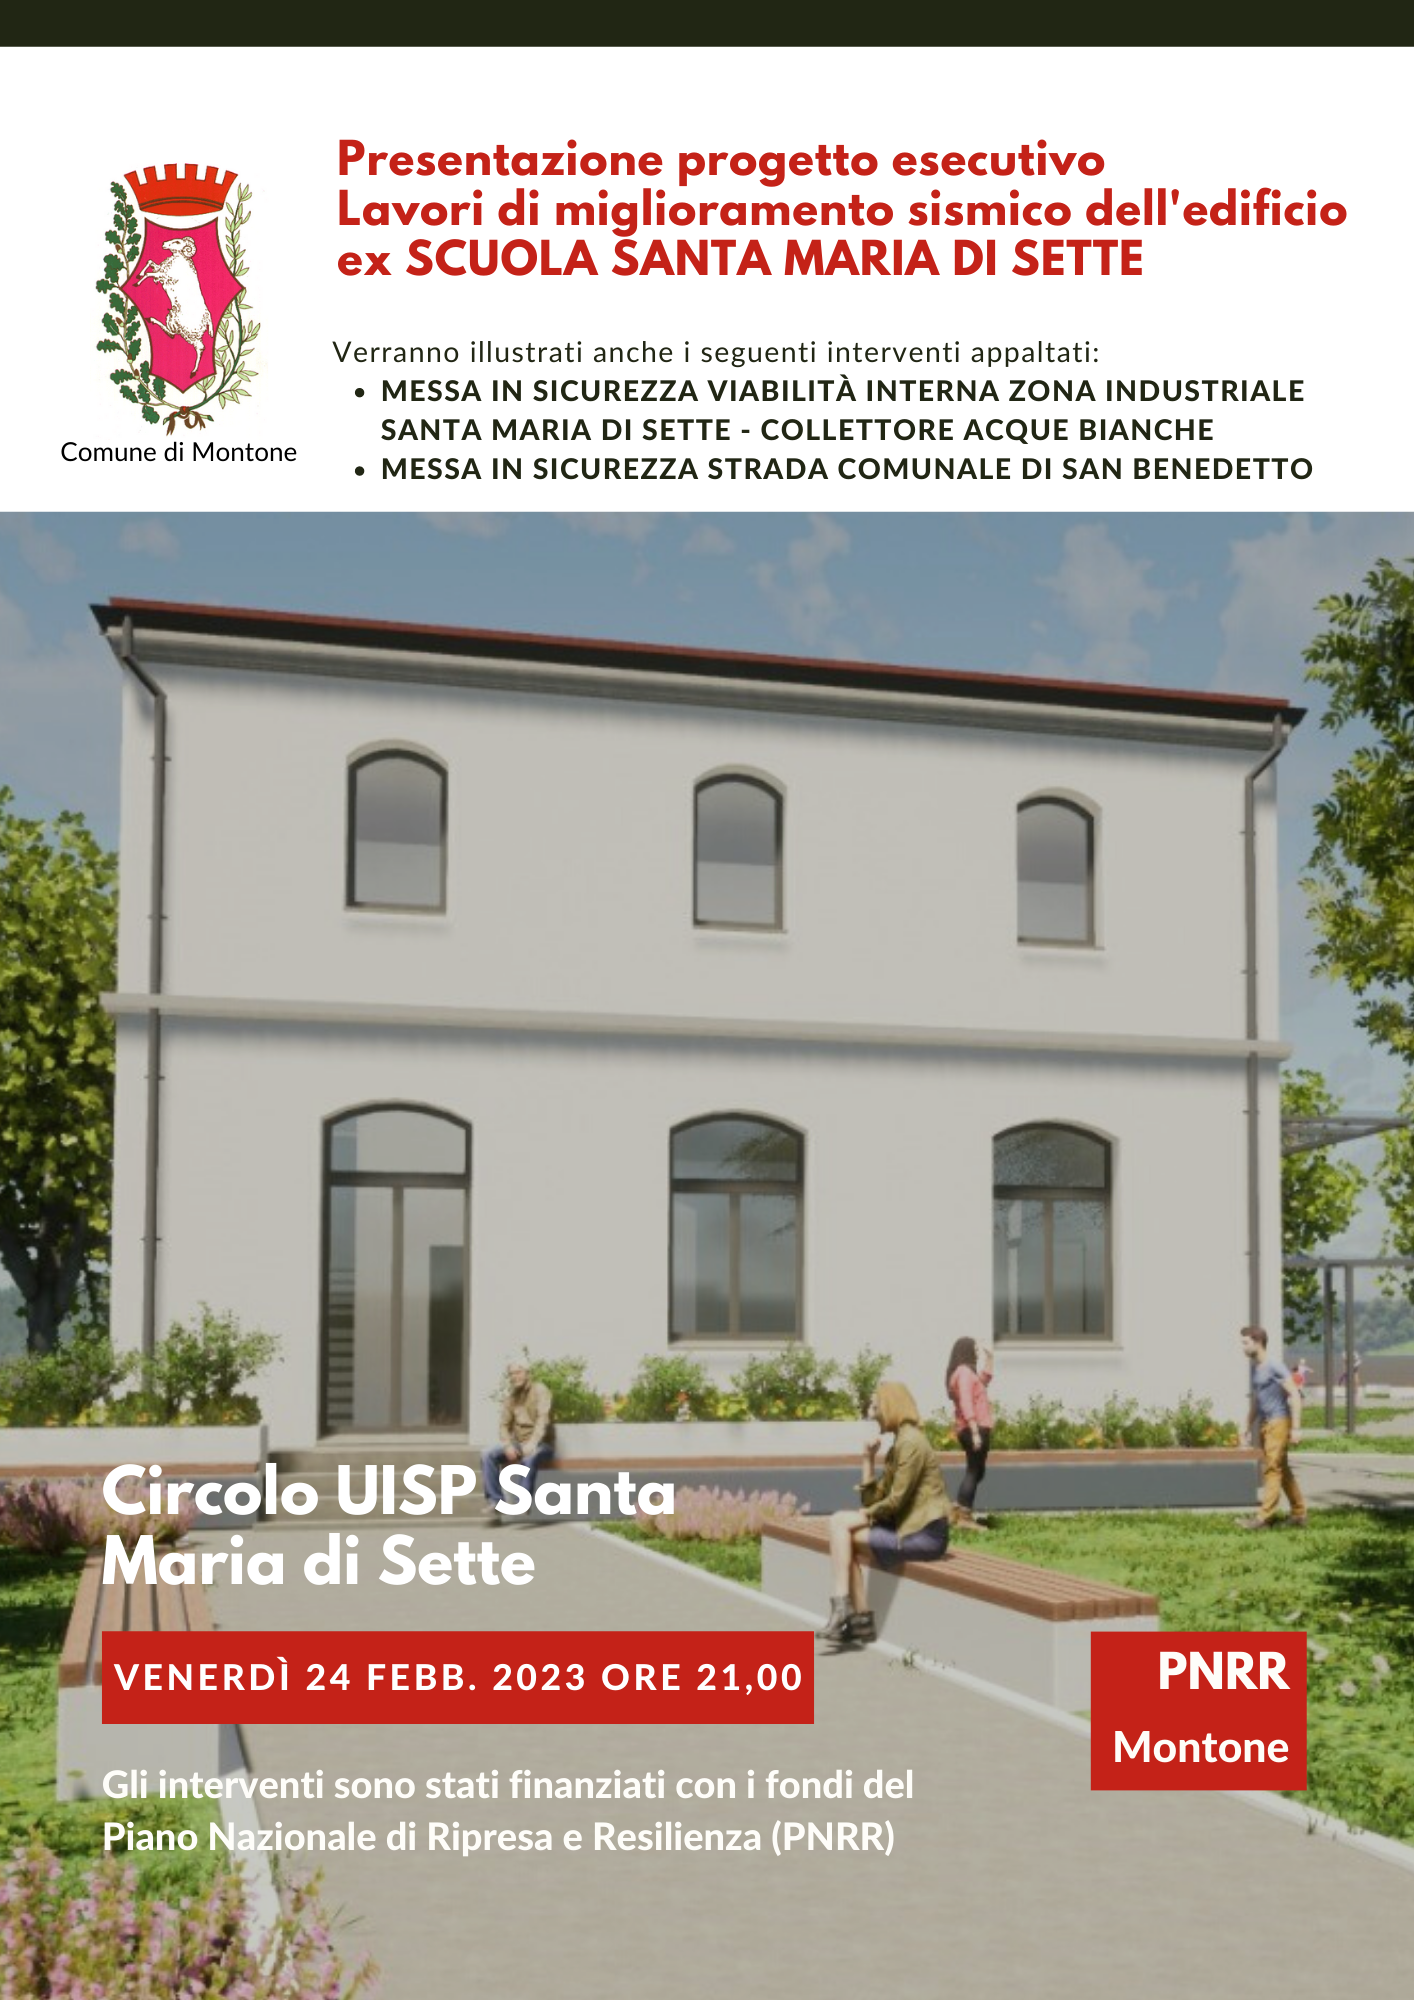 Montone – Ex scuola Santa Maria di Sette, il Comune presenta il progetto dei lavori di miglioramento sismico dell’edificio